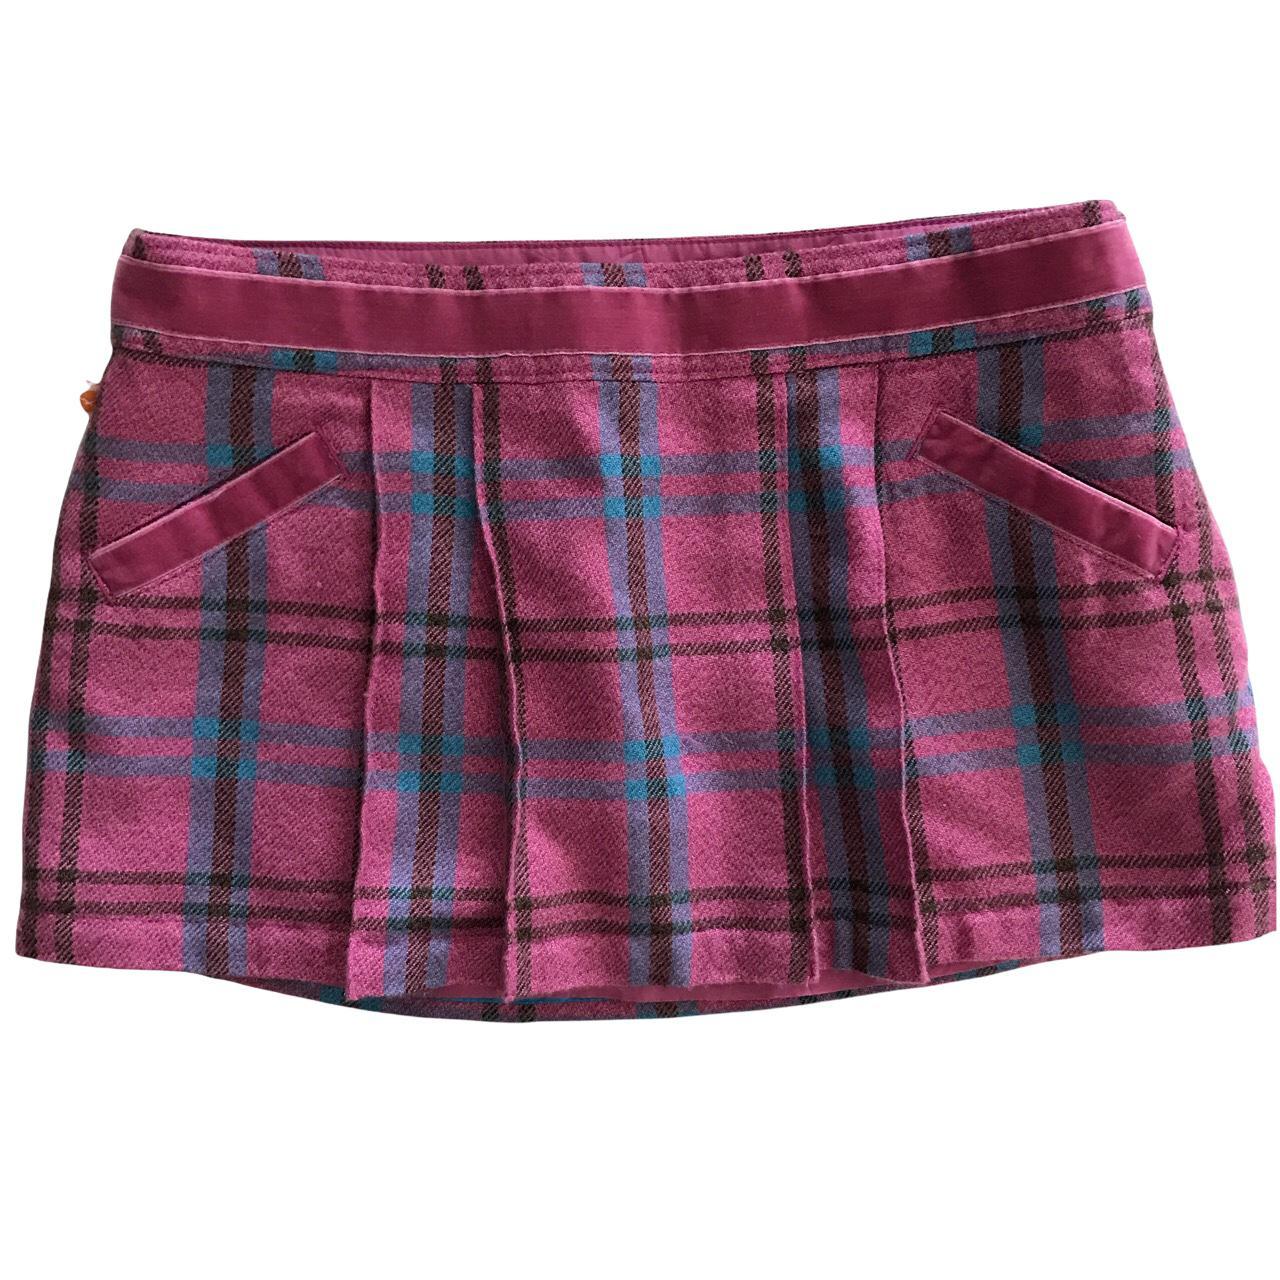 Product Image 2 - Hollister plaid mini skirt
Vintage pink